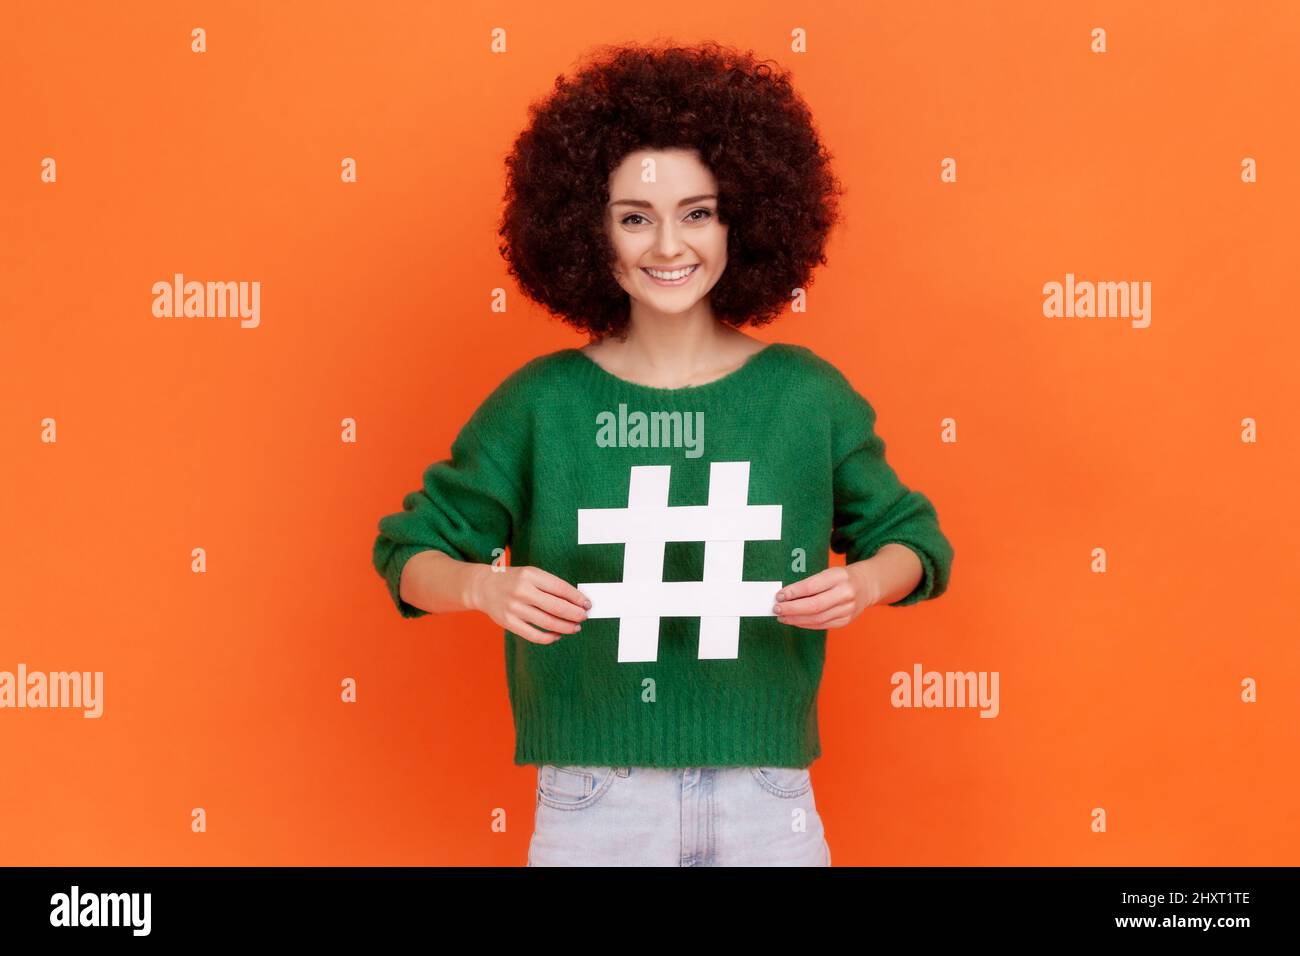 Mujer conmocionada con el peinado Afro apuntando al símbolo blanco hashtag, sorprendente promoción de tema viral en la red social, marcado de las tendencias del blog. Estudio en interior grabado aislado sobre fondo naranja. Foto de stock